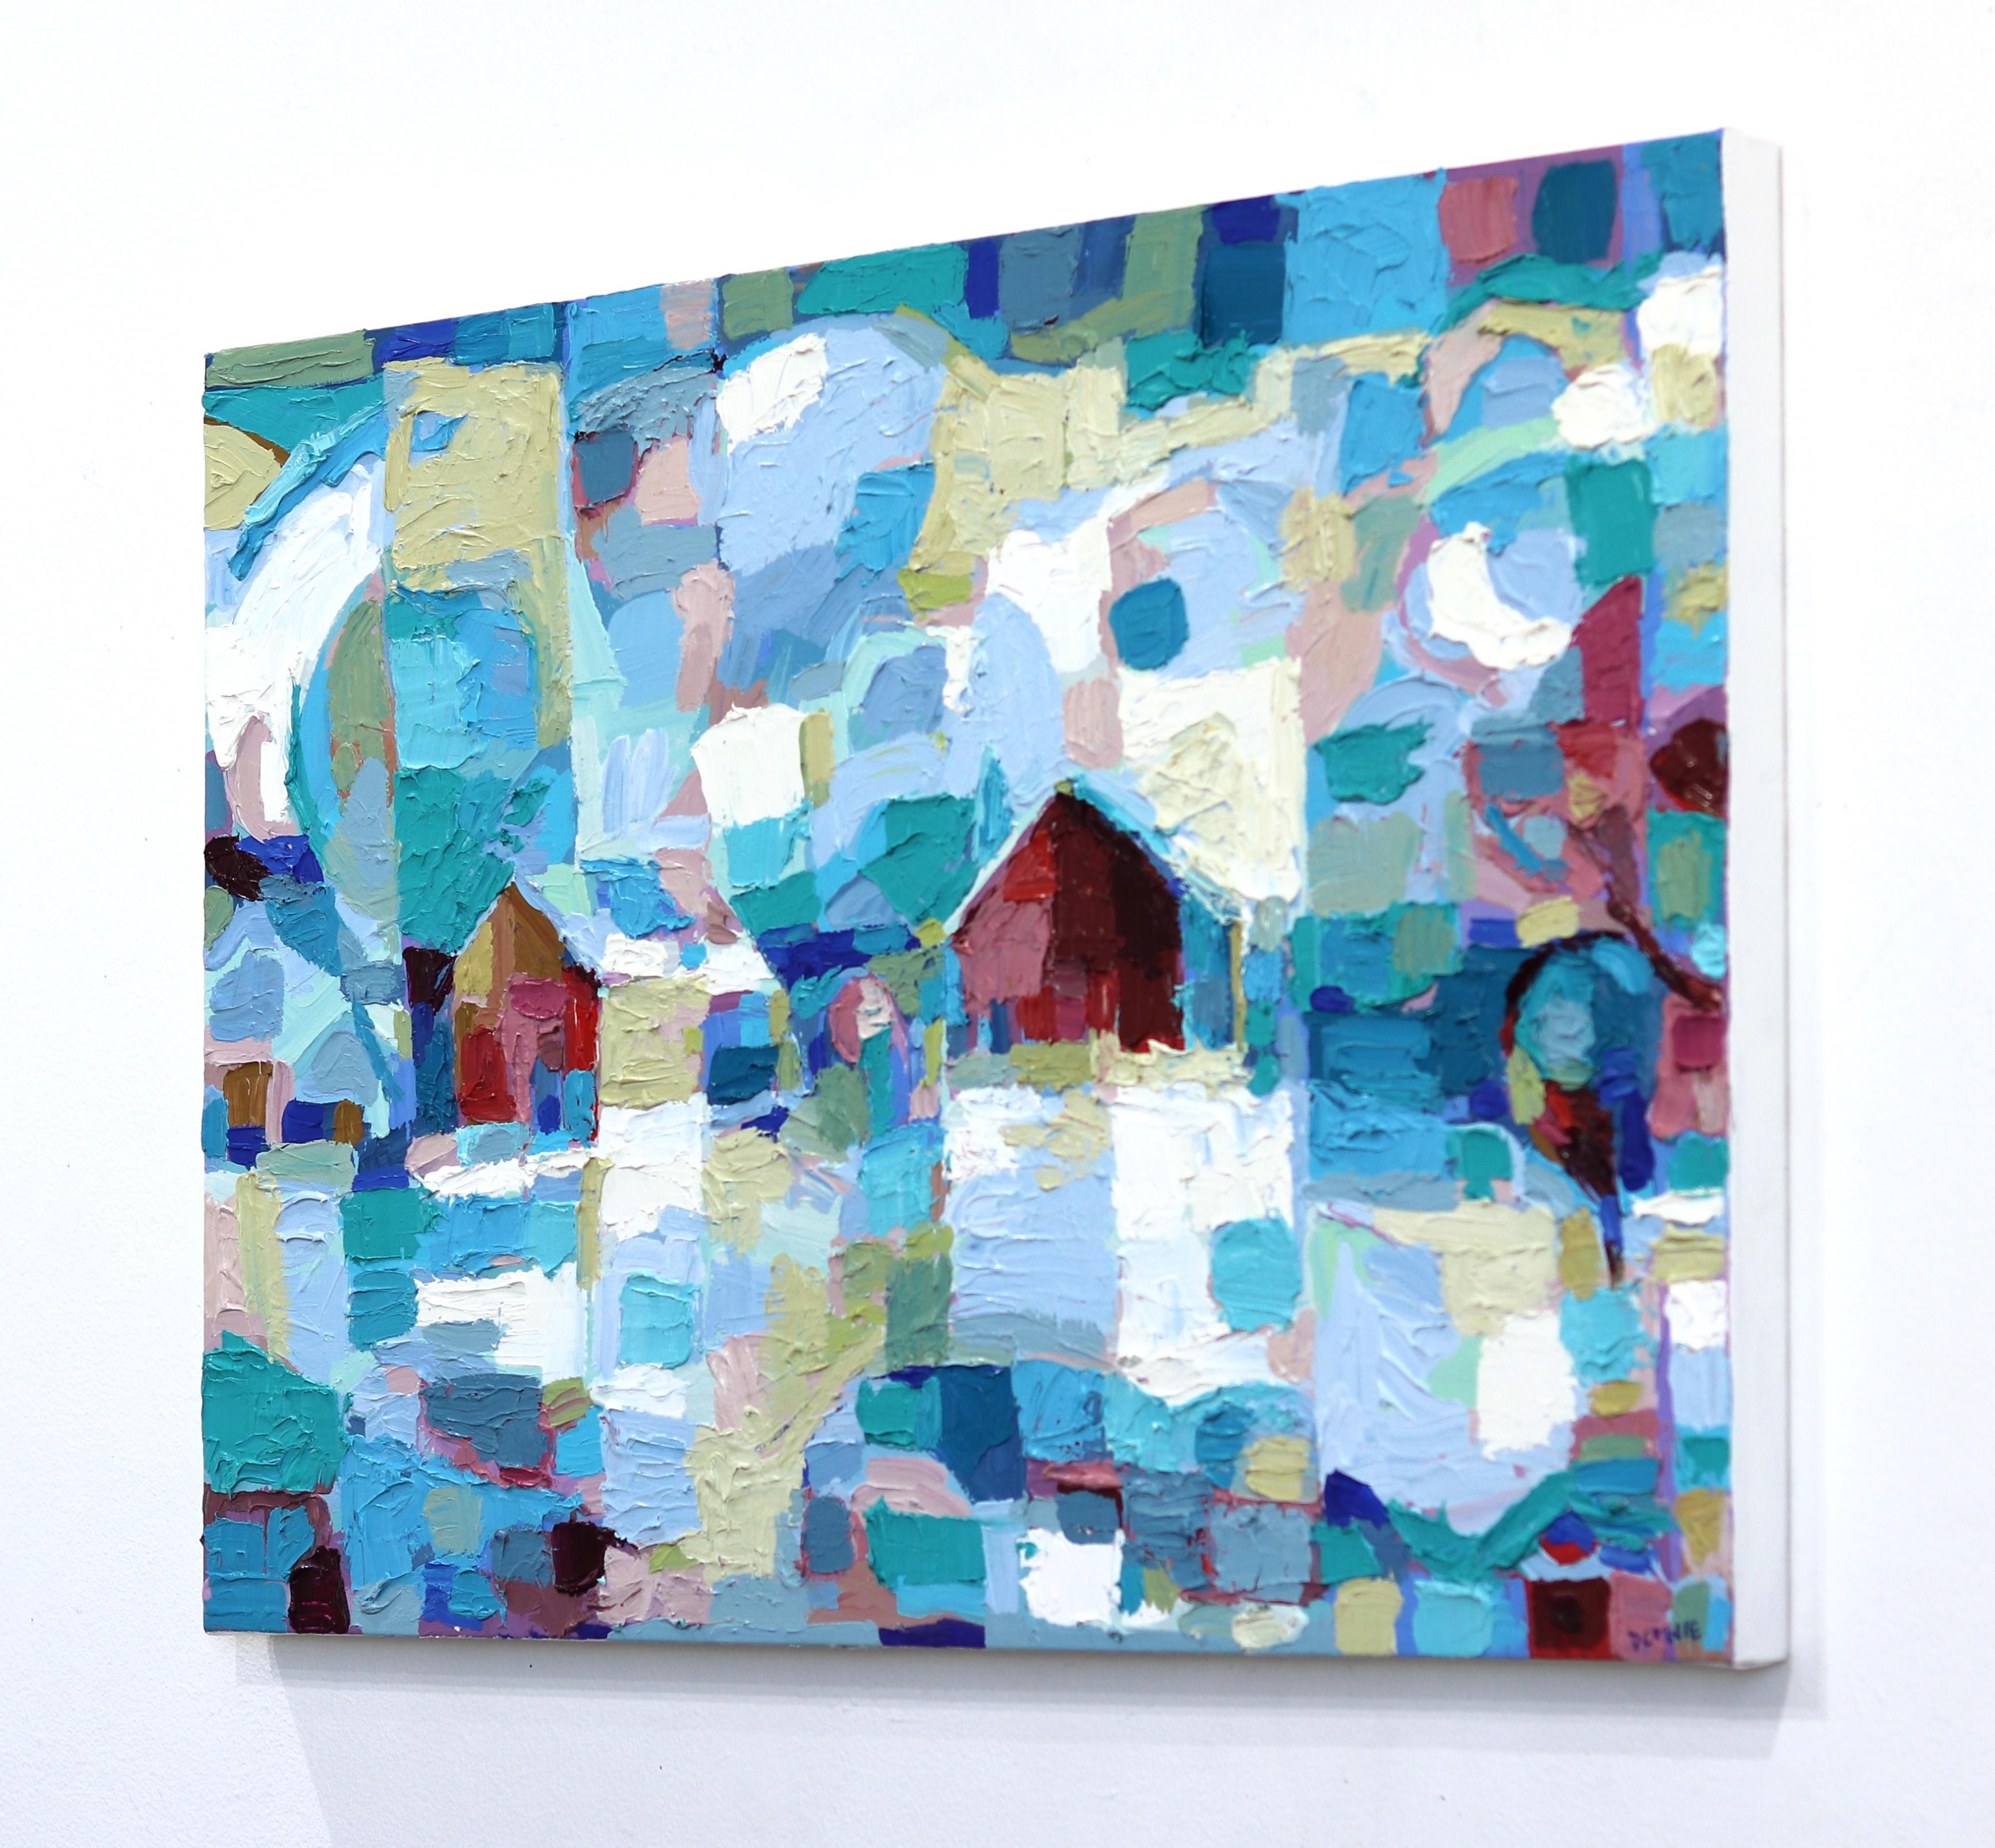 Mit einer pastosen, malerischen Technik schafft Dana Cowie kubistisch inspirierte Bauernhof- und Landschaften. Durch die Arbeit mit kontrollierten Farbschemata erscheinen ihre Kunstwerke aus der Nähe abstrakt und werden gegenständlicher, wenn der